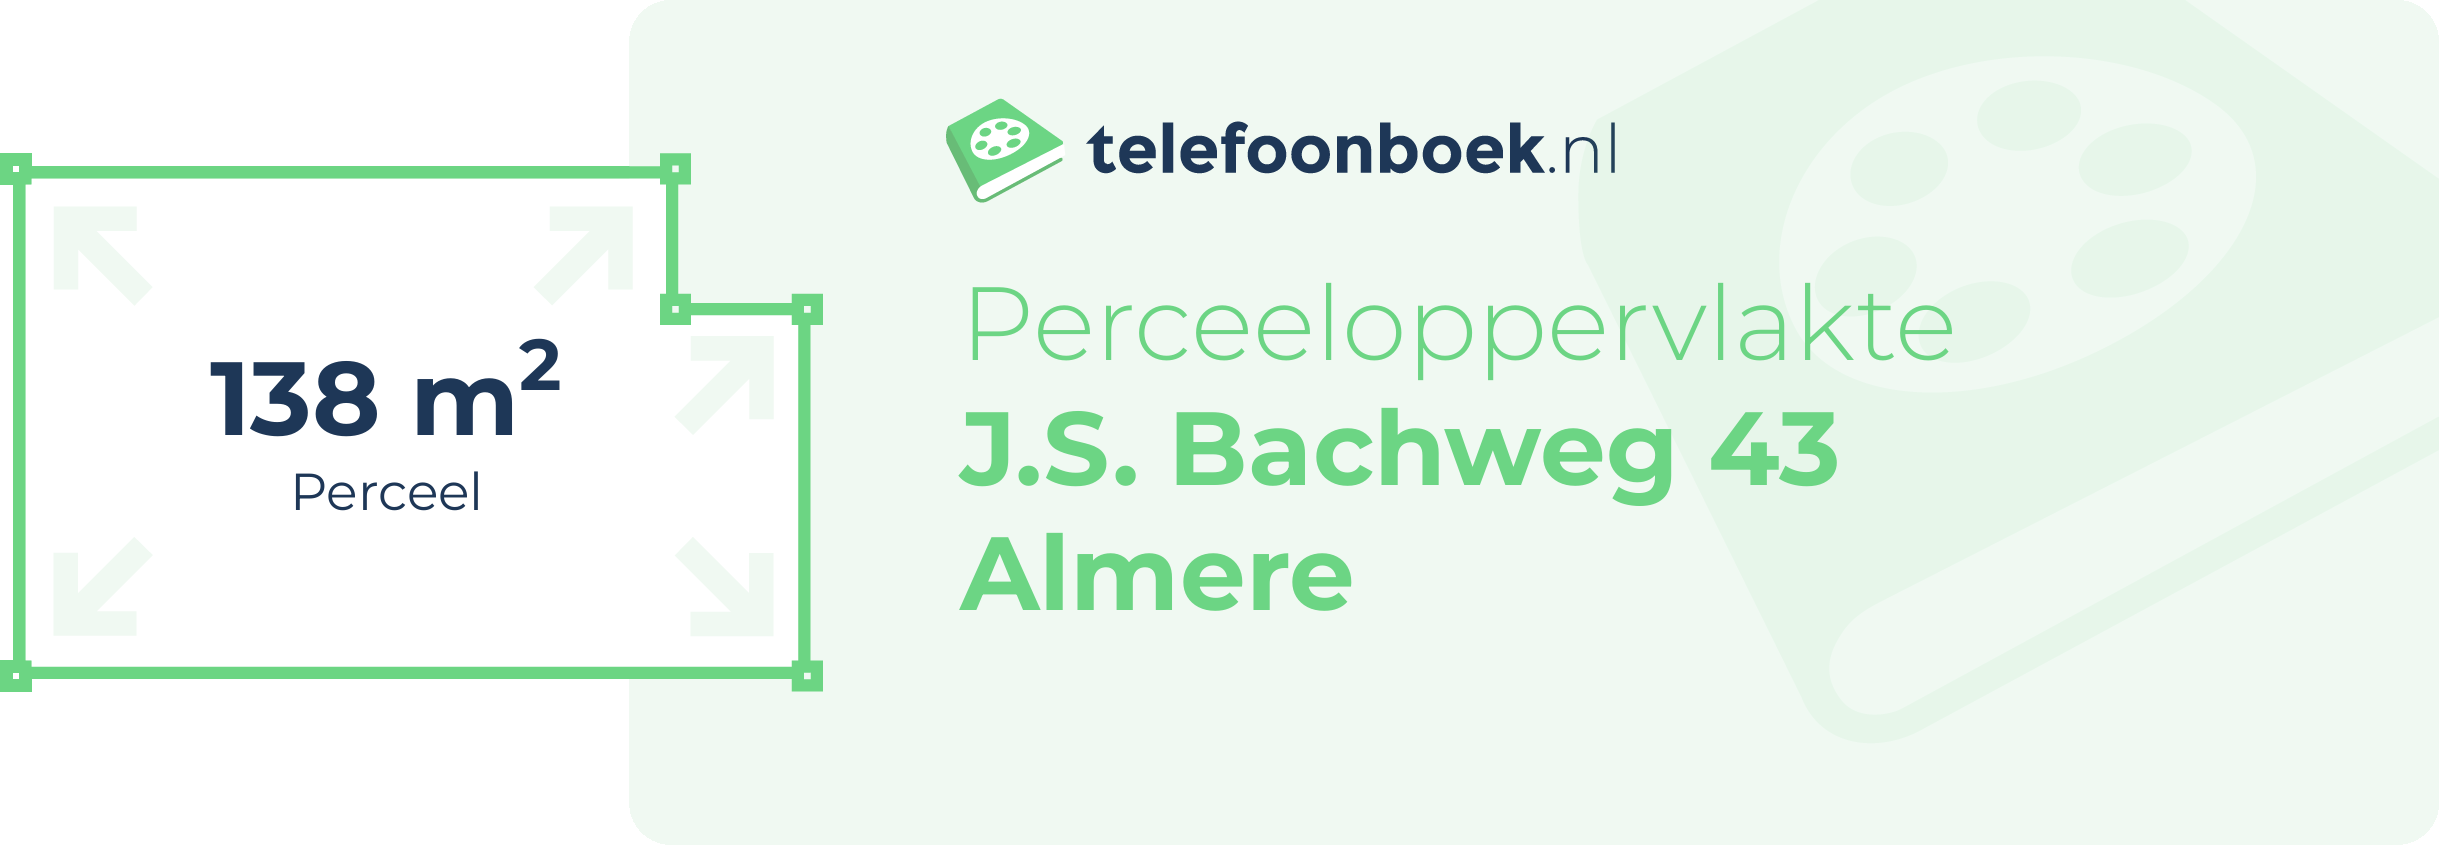 Perceeloppervlakte J.S. Bachweg 43 Almere